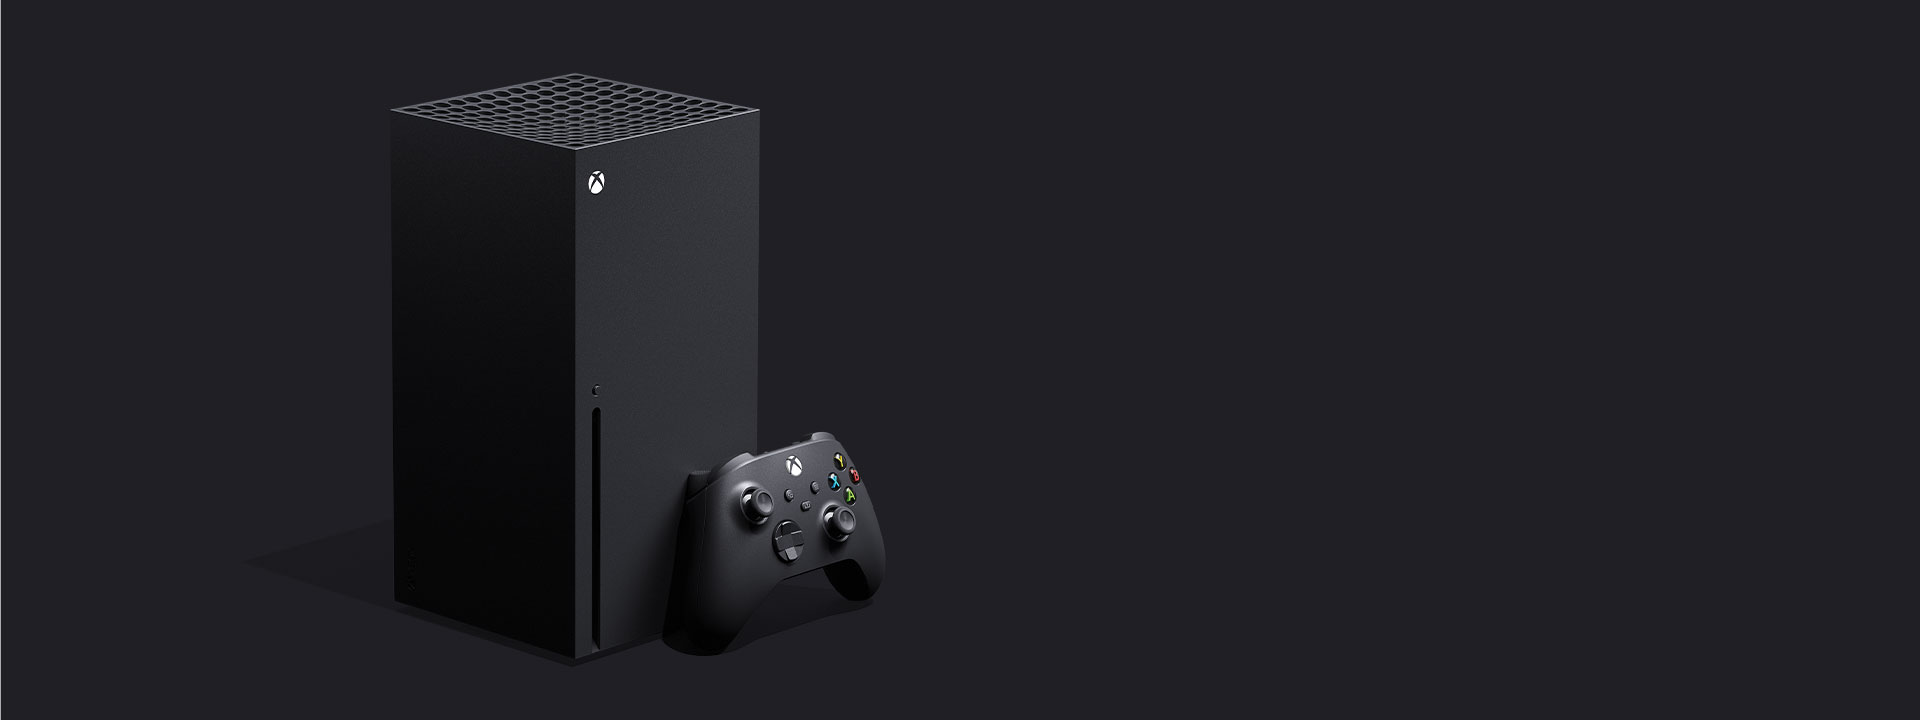 Microsoft Xbox One S Black Console